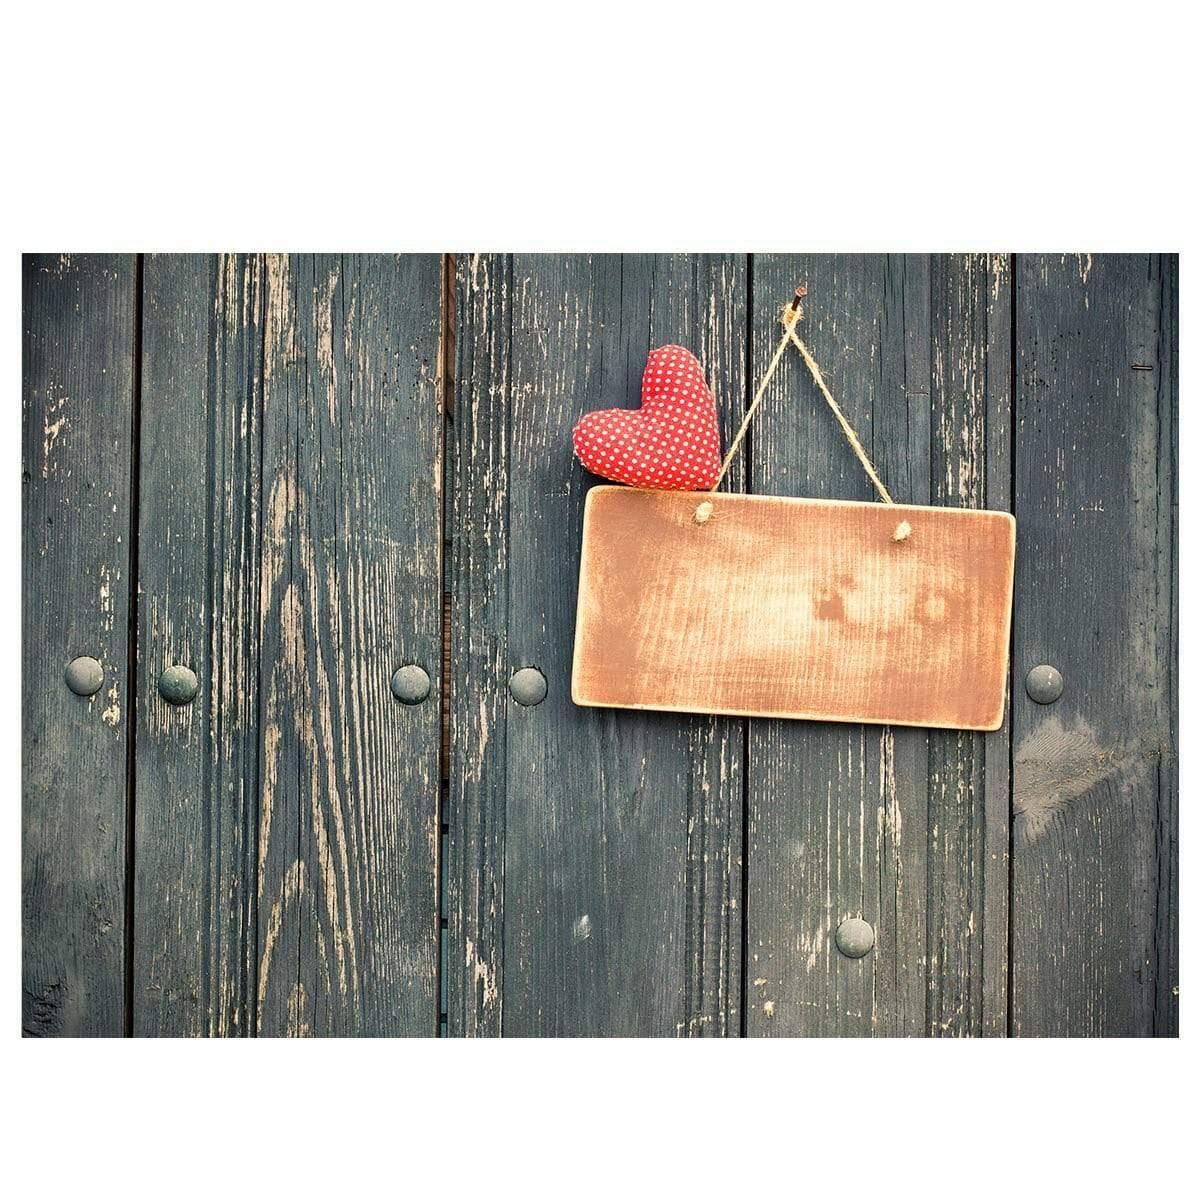 Allenjoy Valentine Wood Backdrop With Red Heart Doorplate - Allenjoystudio